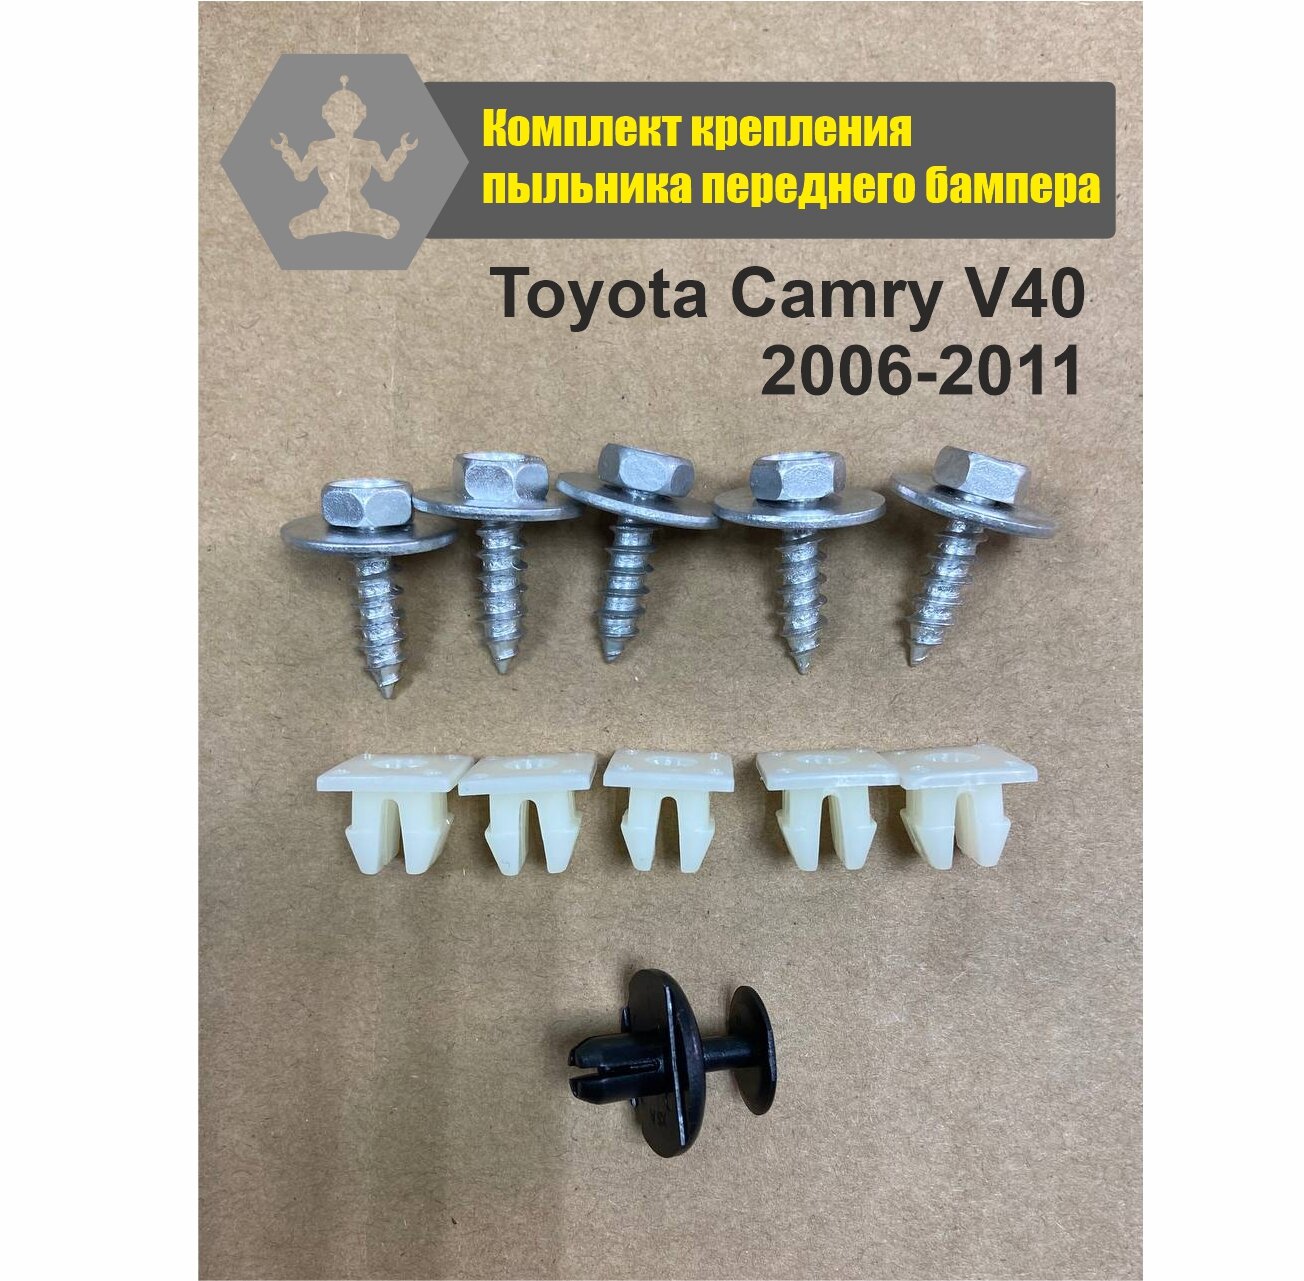 Комплект автокрепежа пыльника переднего бампера Toyota Camry V40 2006-2011